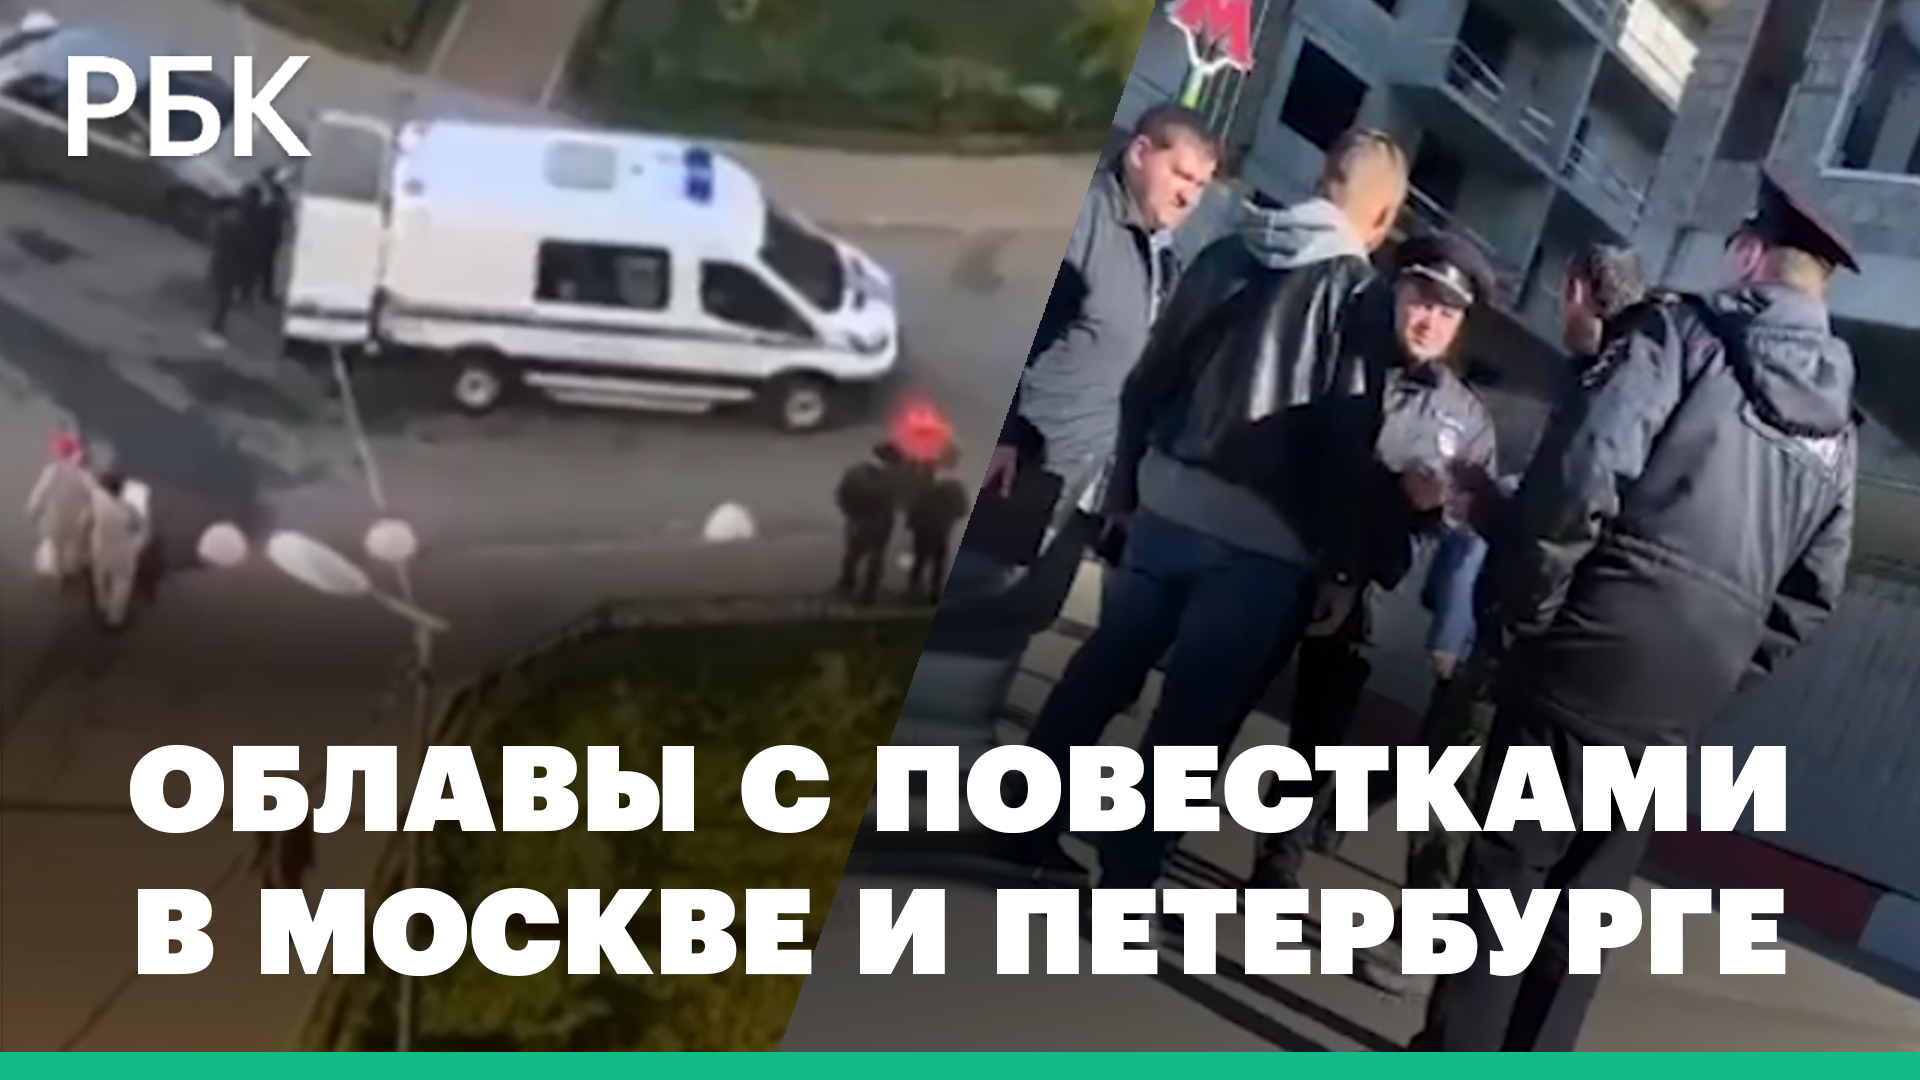 Сотни сотрудников полиции дежурят на улицах Москвы и Петербурга, чтобы вручать повестки горожанам